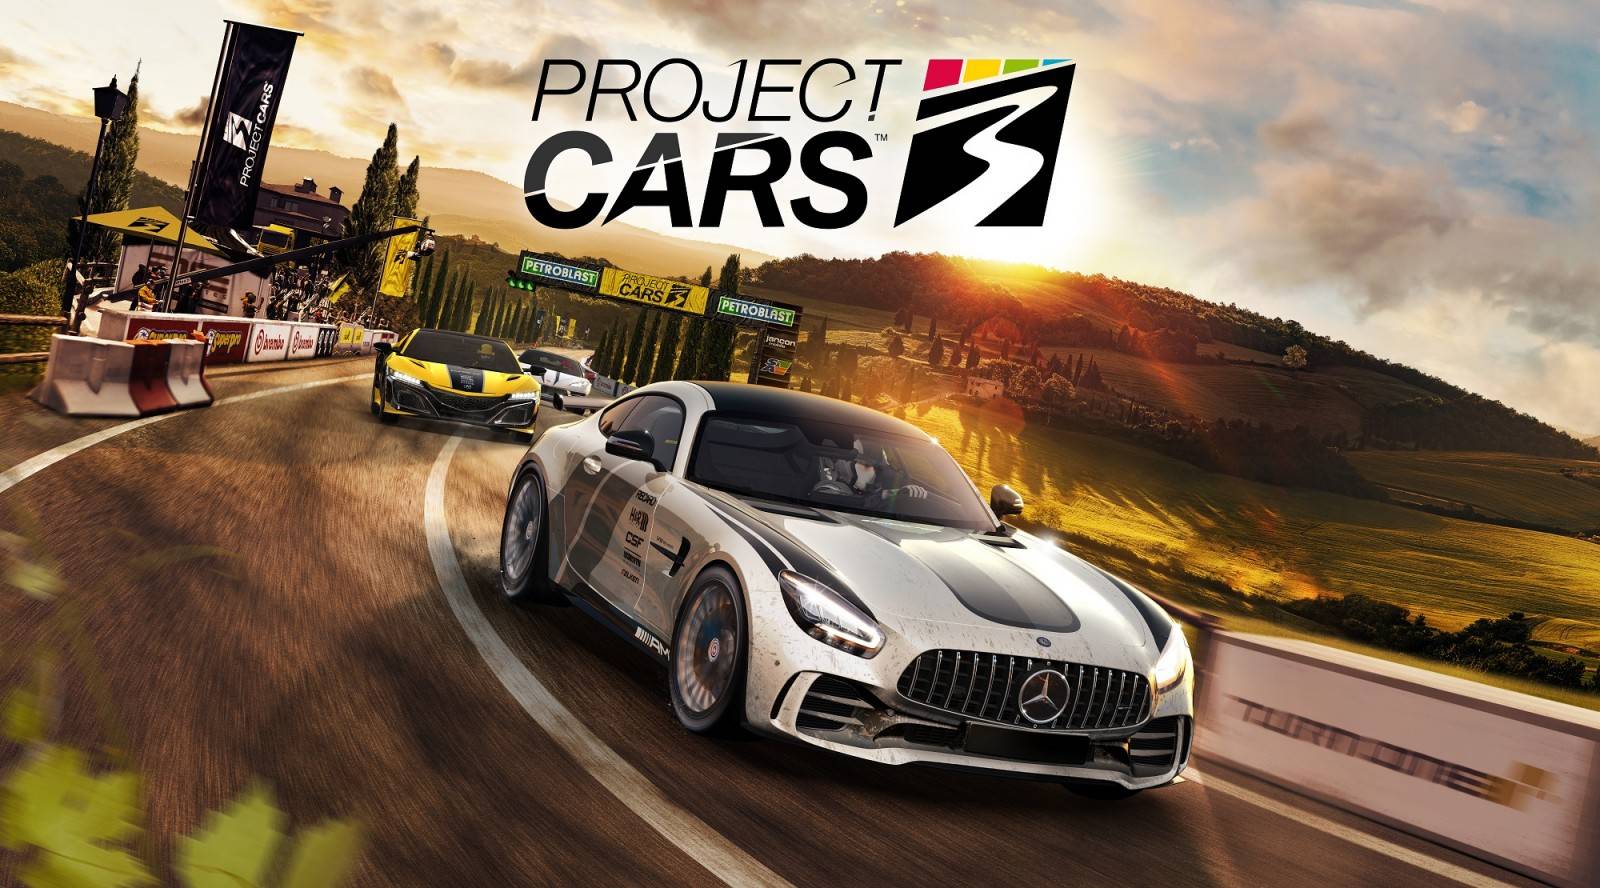 Project CARS 3: El DLC “Paquete Eléctrico” ya está disponible como parte del Pase de Temporada de Project CARS 3 para todos los jugadores de PlayStation 4, Xbox One y PC, y como compra independiente.